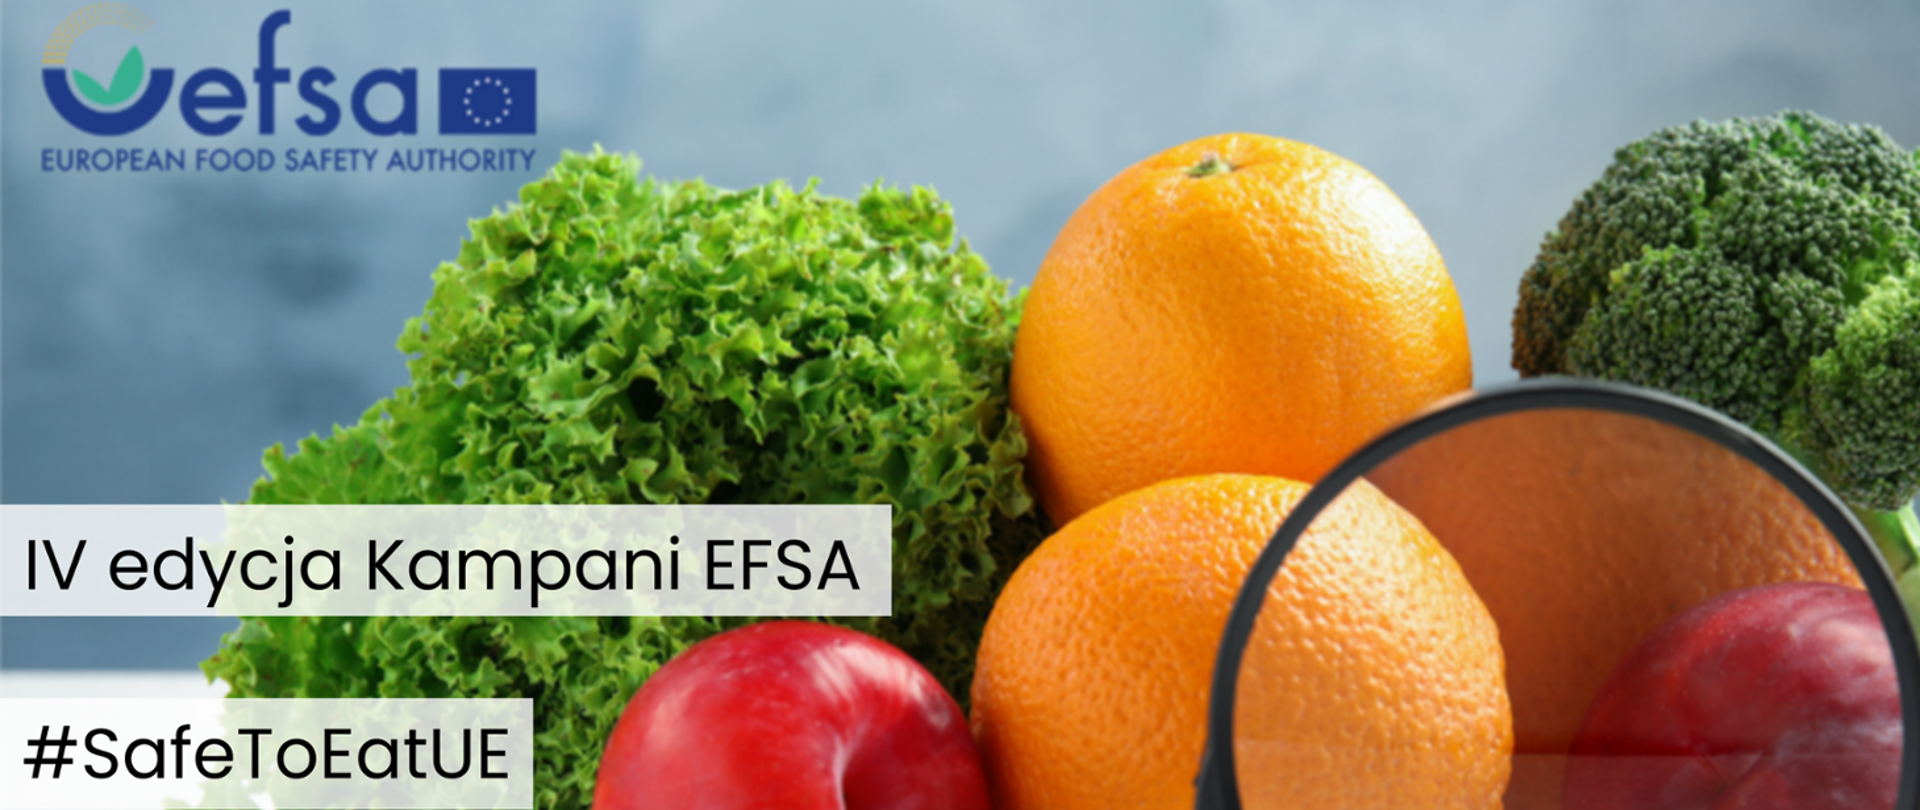 Kampania Europejskiego Urzędu ds. Bezpieczeństwa Żywności #Safe2EatEU "Jedz bezpiecznie"